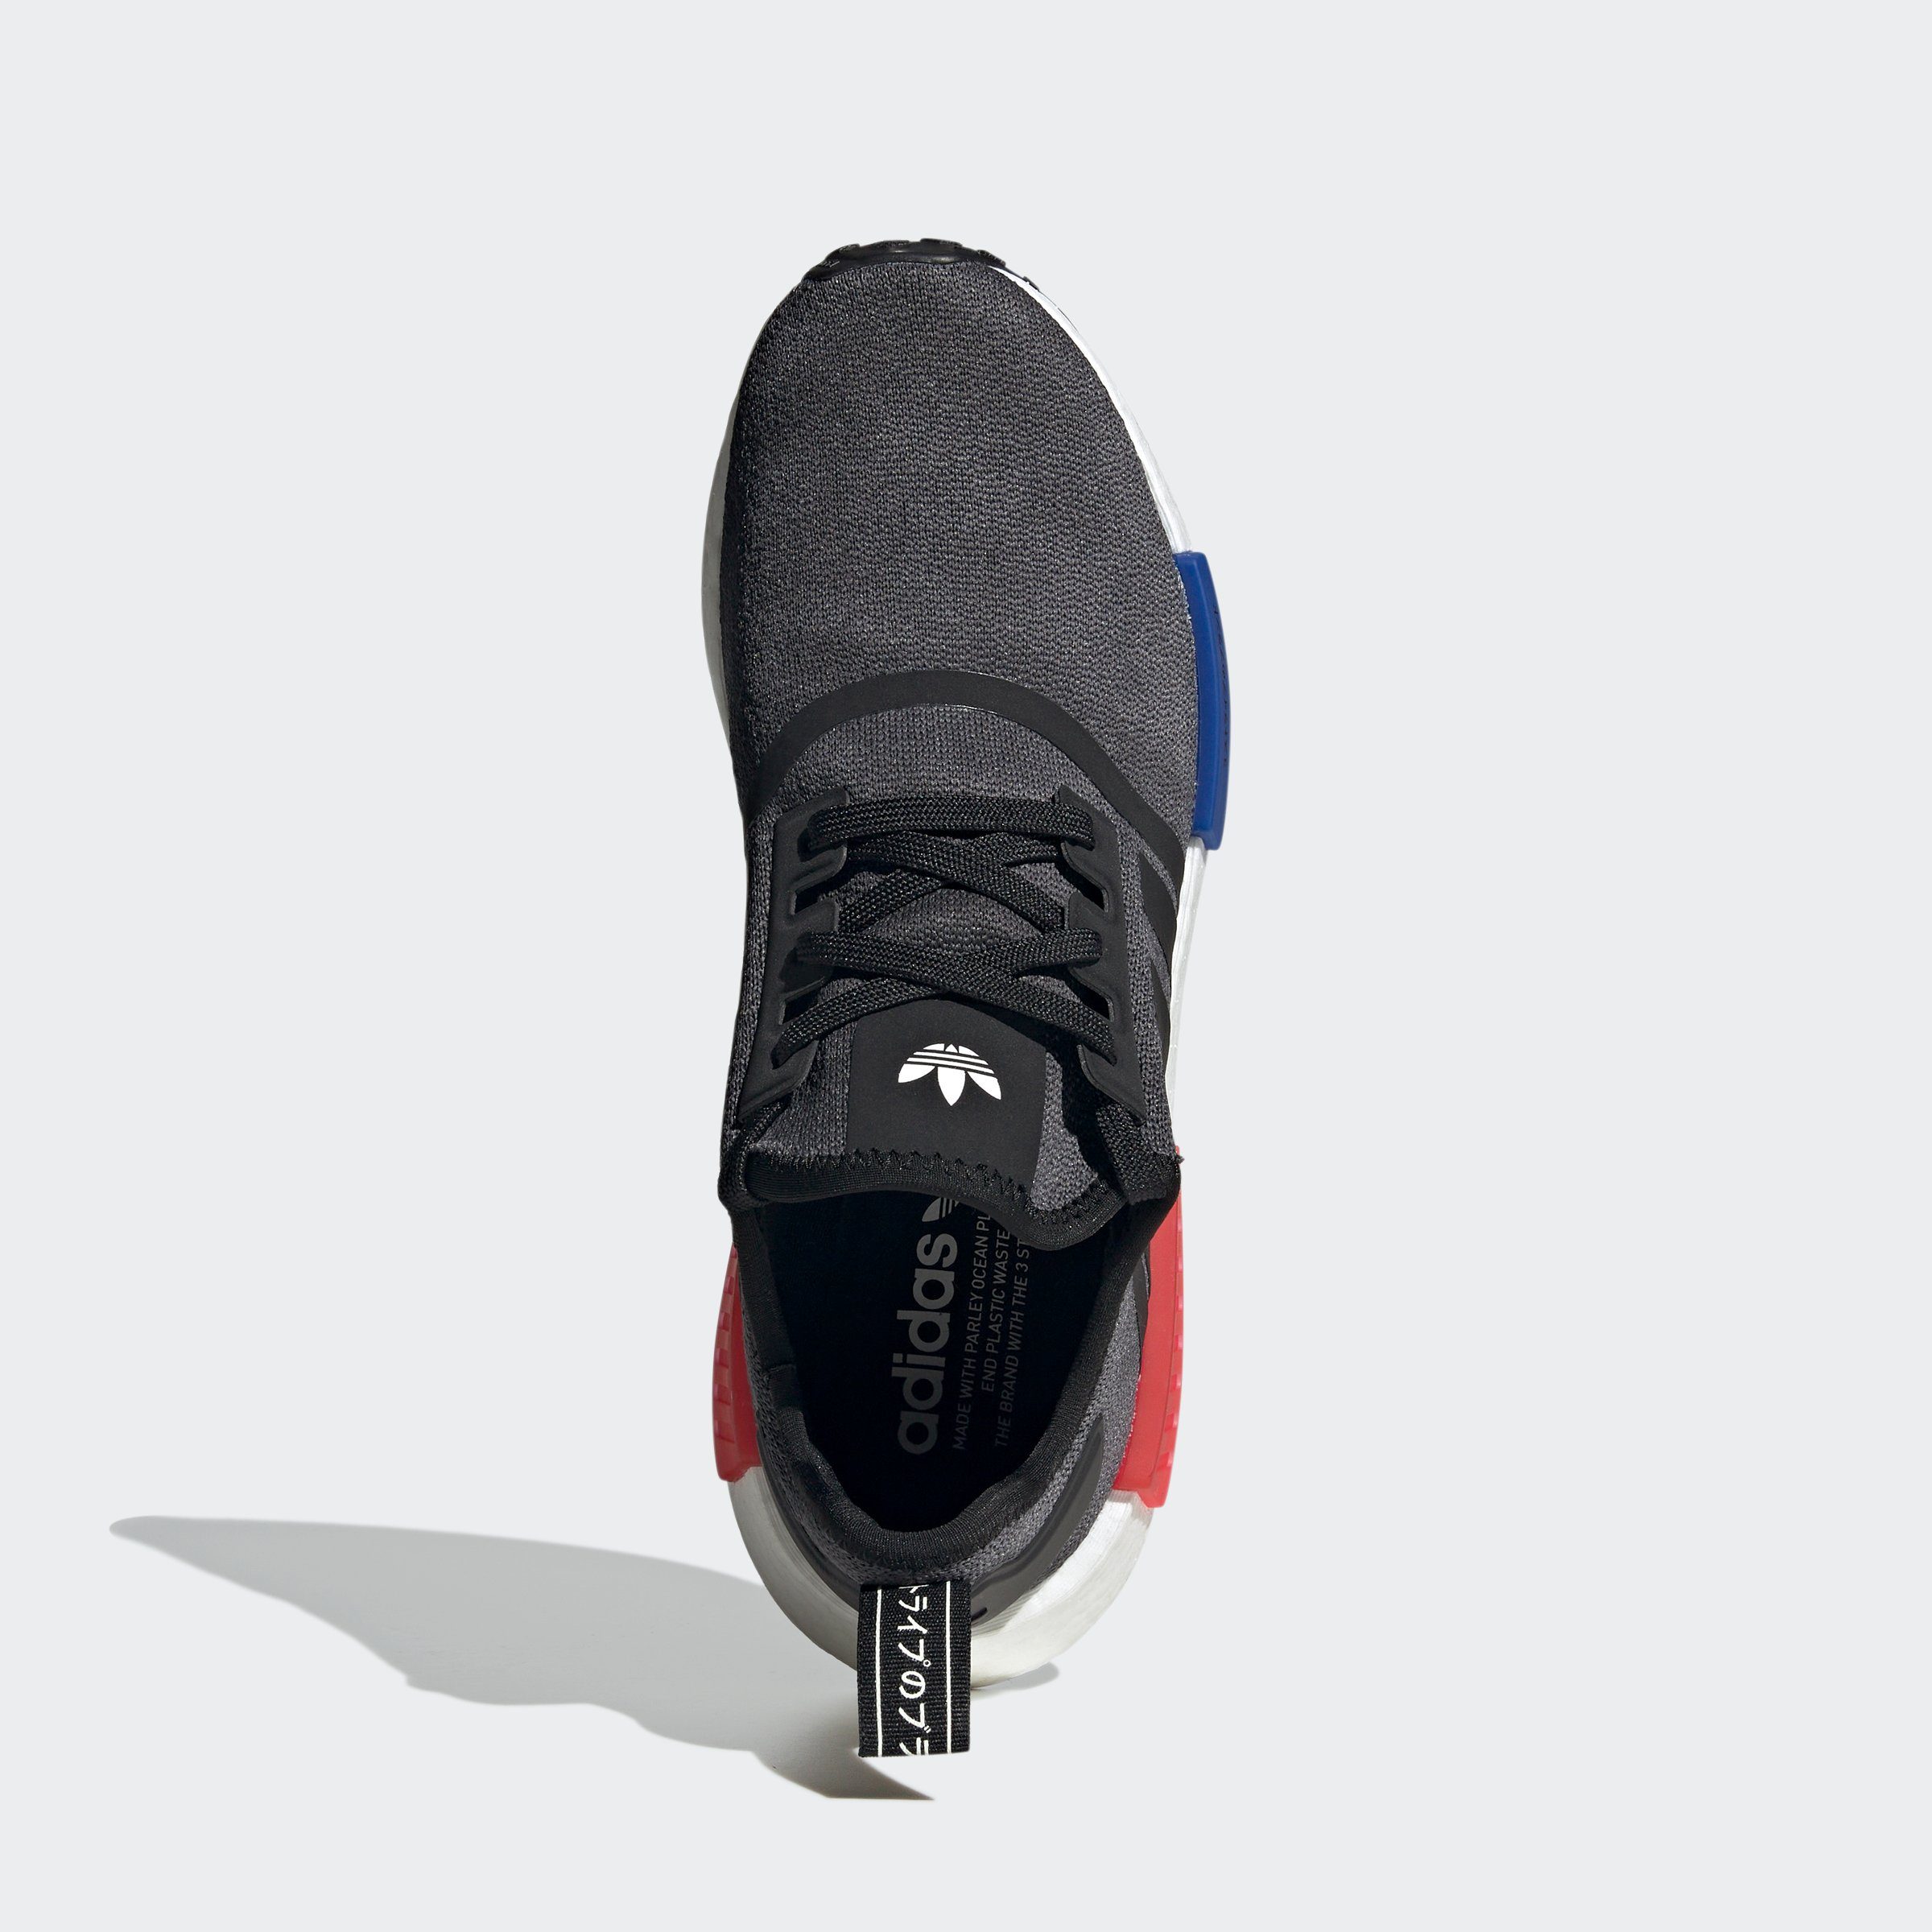 Originals CBLACK/SELUBL/GLORED Sneaker adidas NMD_R1